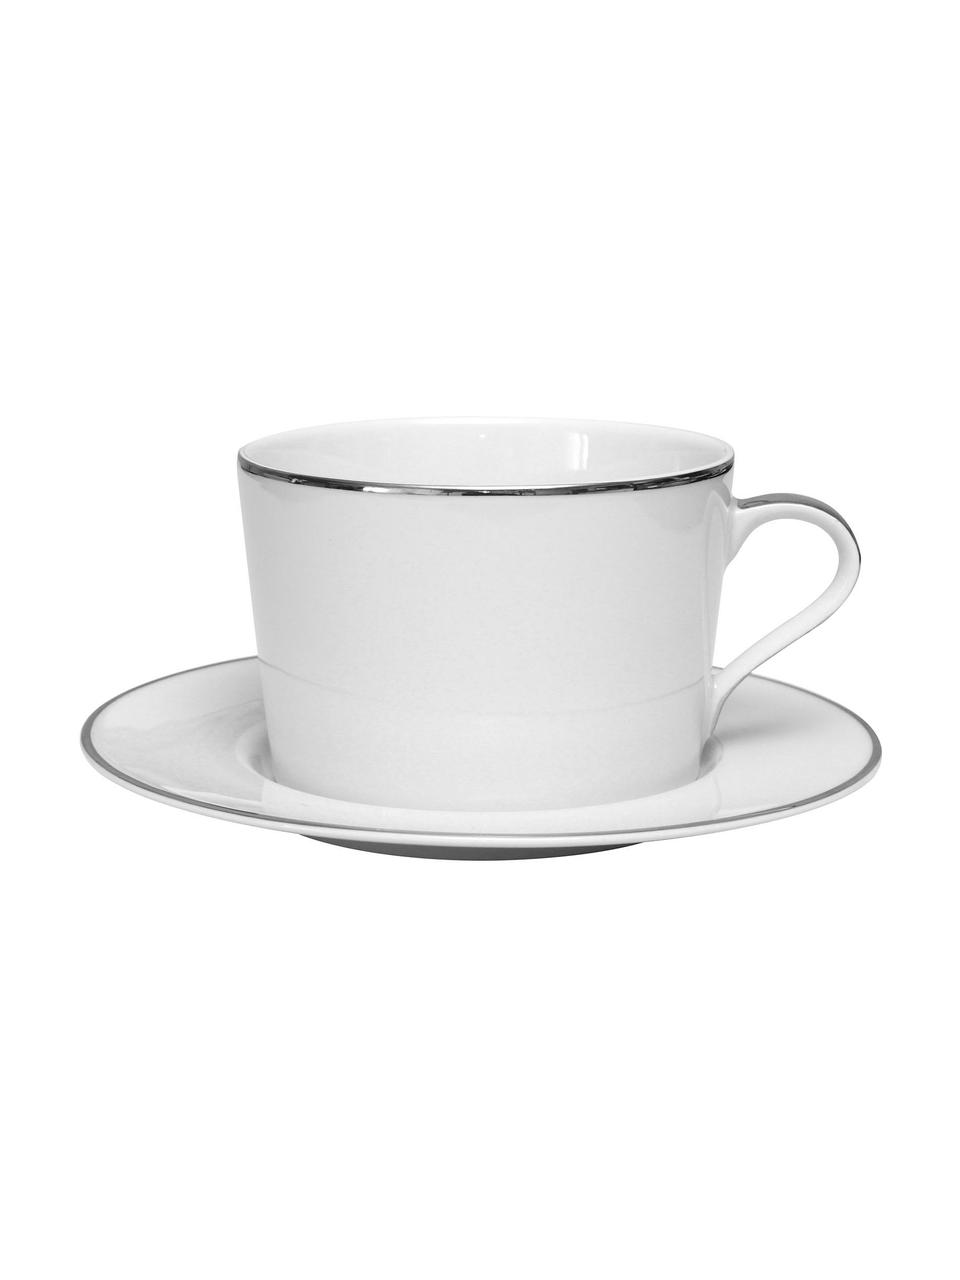 Porcelánové šálky na kávu s podšálky se stříbrnými okraji Ginger, 2 ks, Porcelán, Bílá, stříbrná, Ø 17 cm